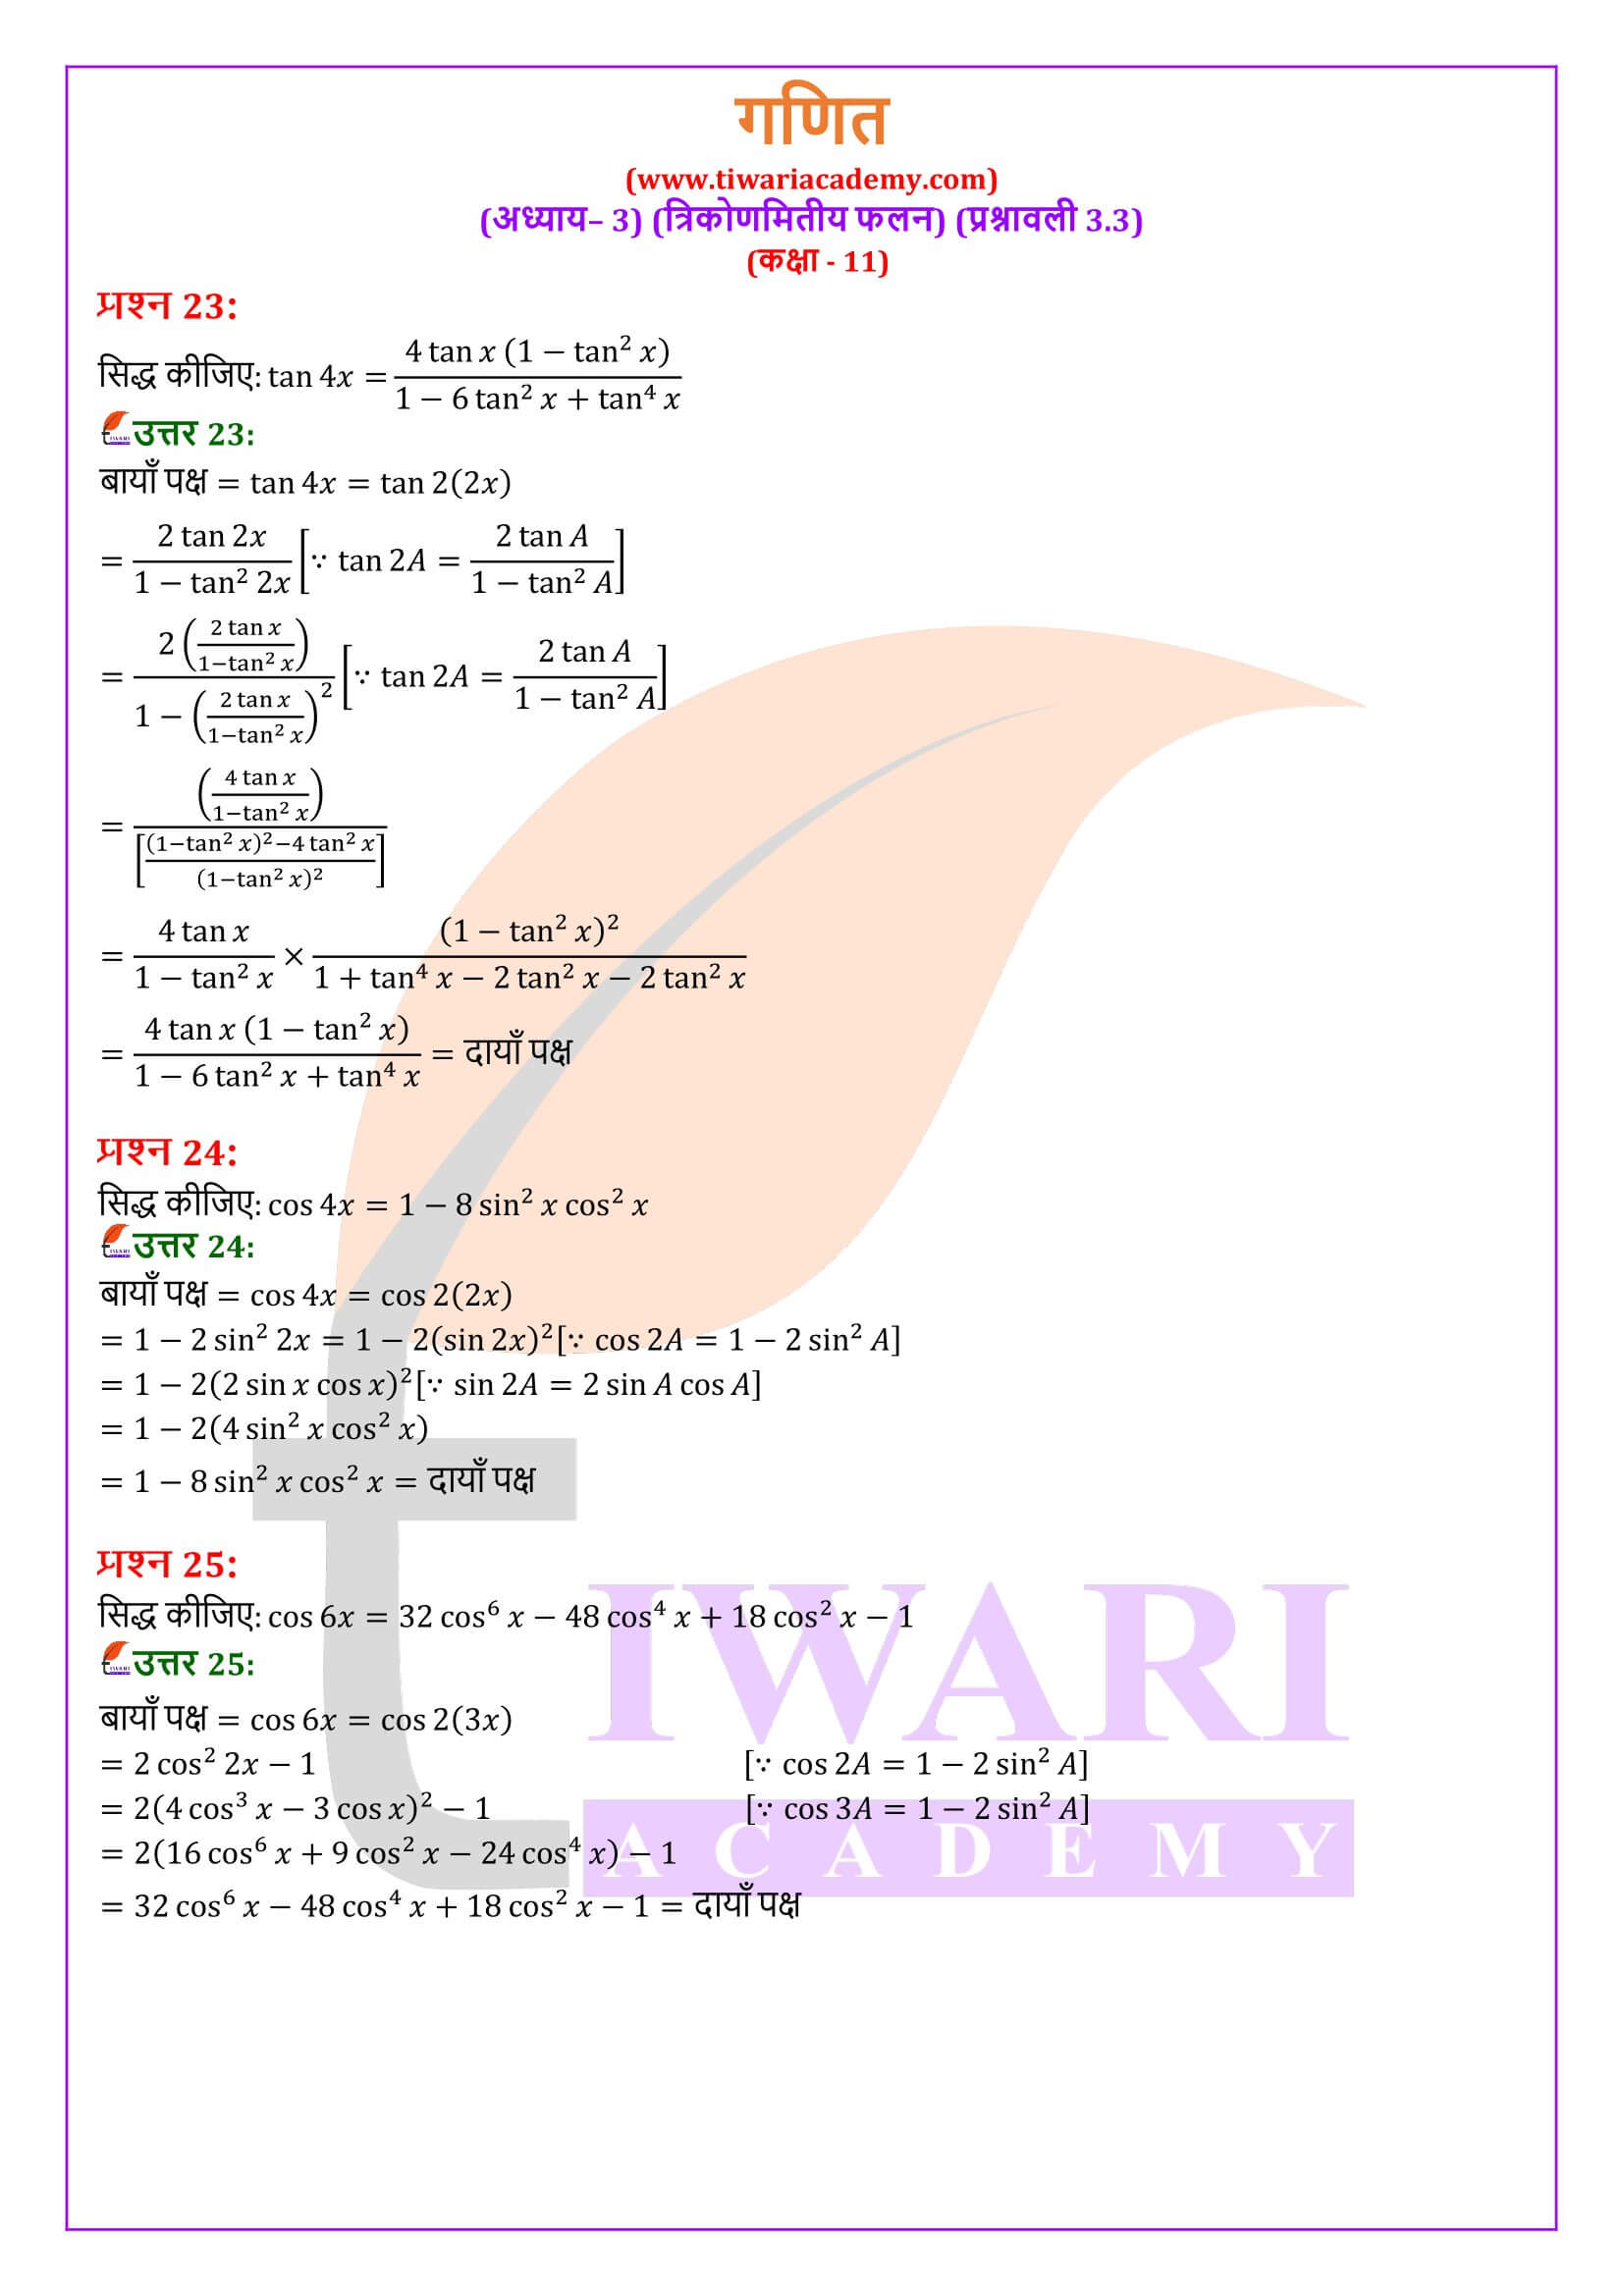 एनसीईआरटी समाधान कक्षा 11 गणित अभ्यास 3.3 के सभी हल हिंदी मीडियम में